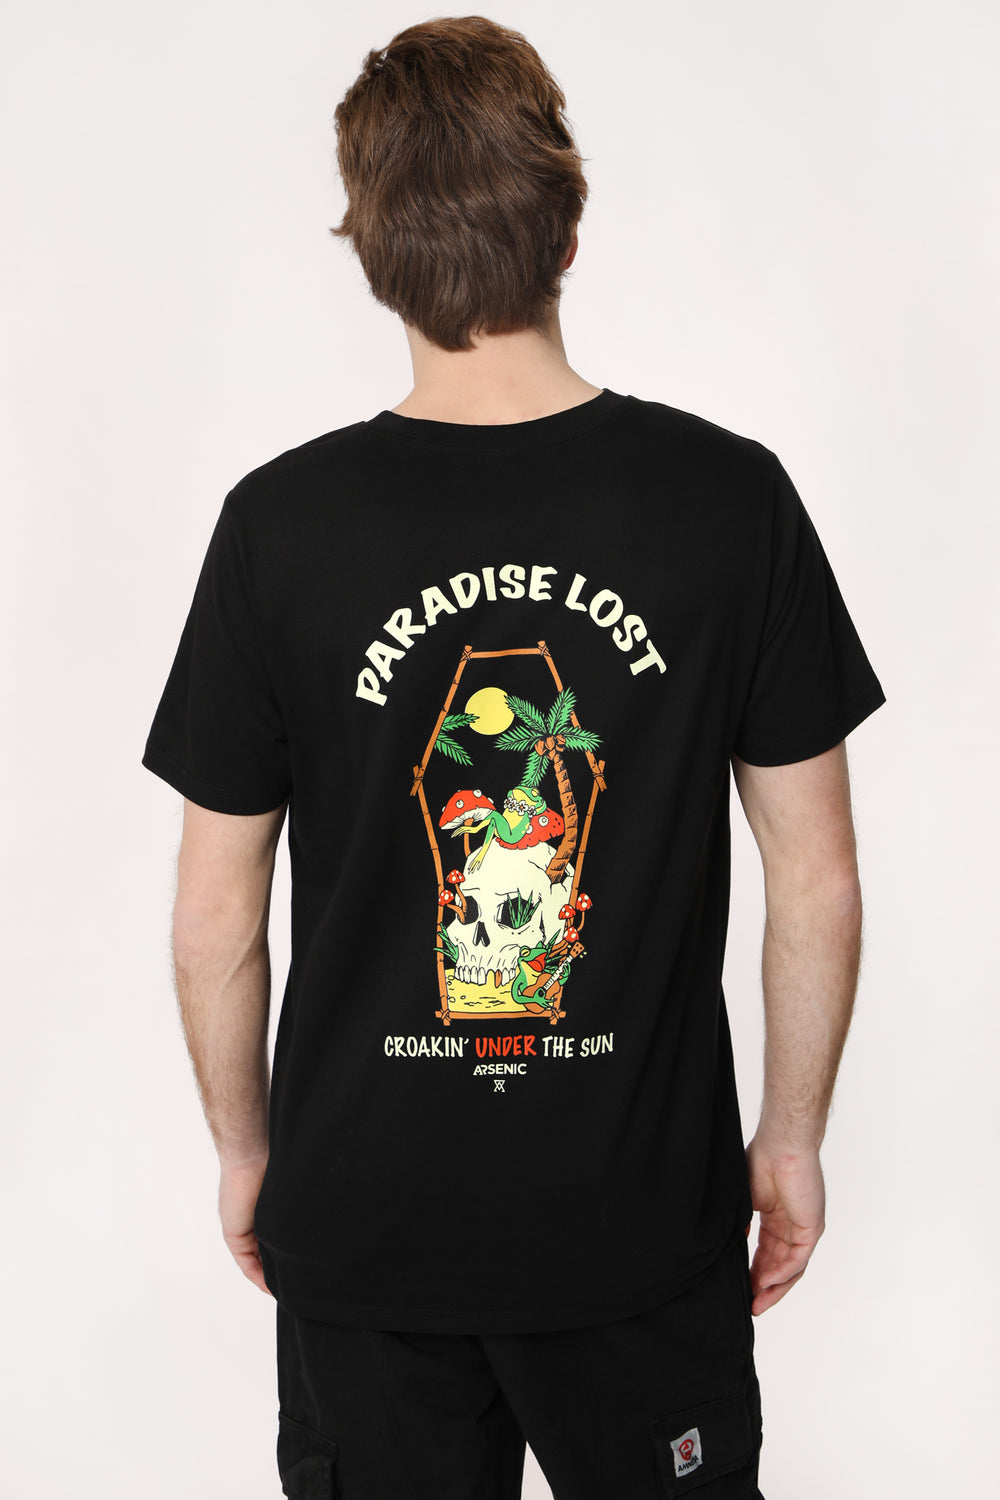 T-Shirt Imprimé Paradise Lost Arsenic Homme T-Shirt Imprimé Paradise Lost Arsenic Homme